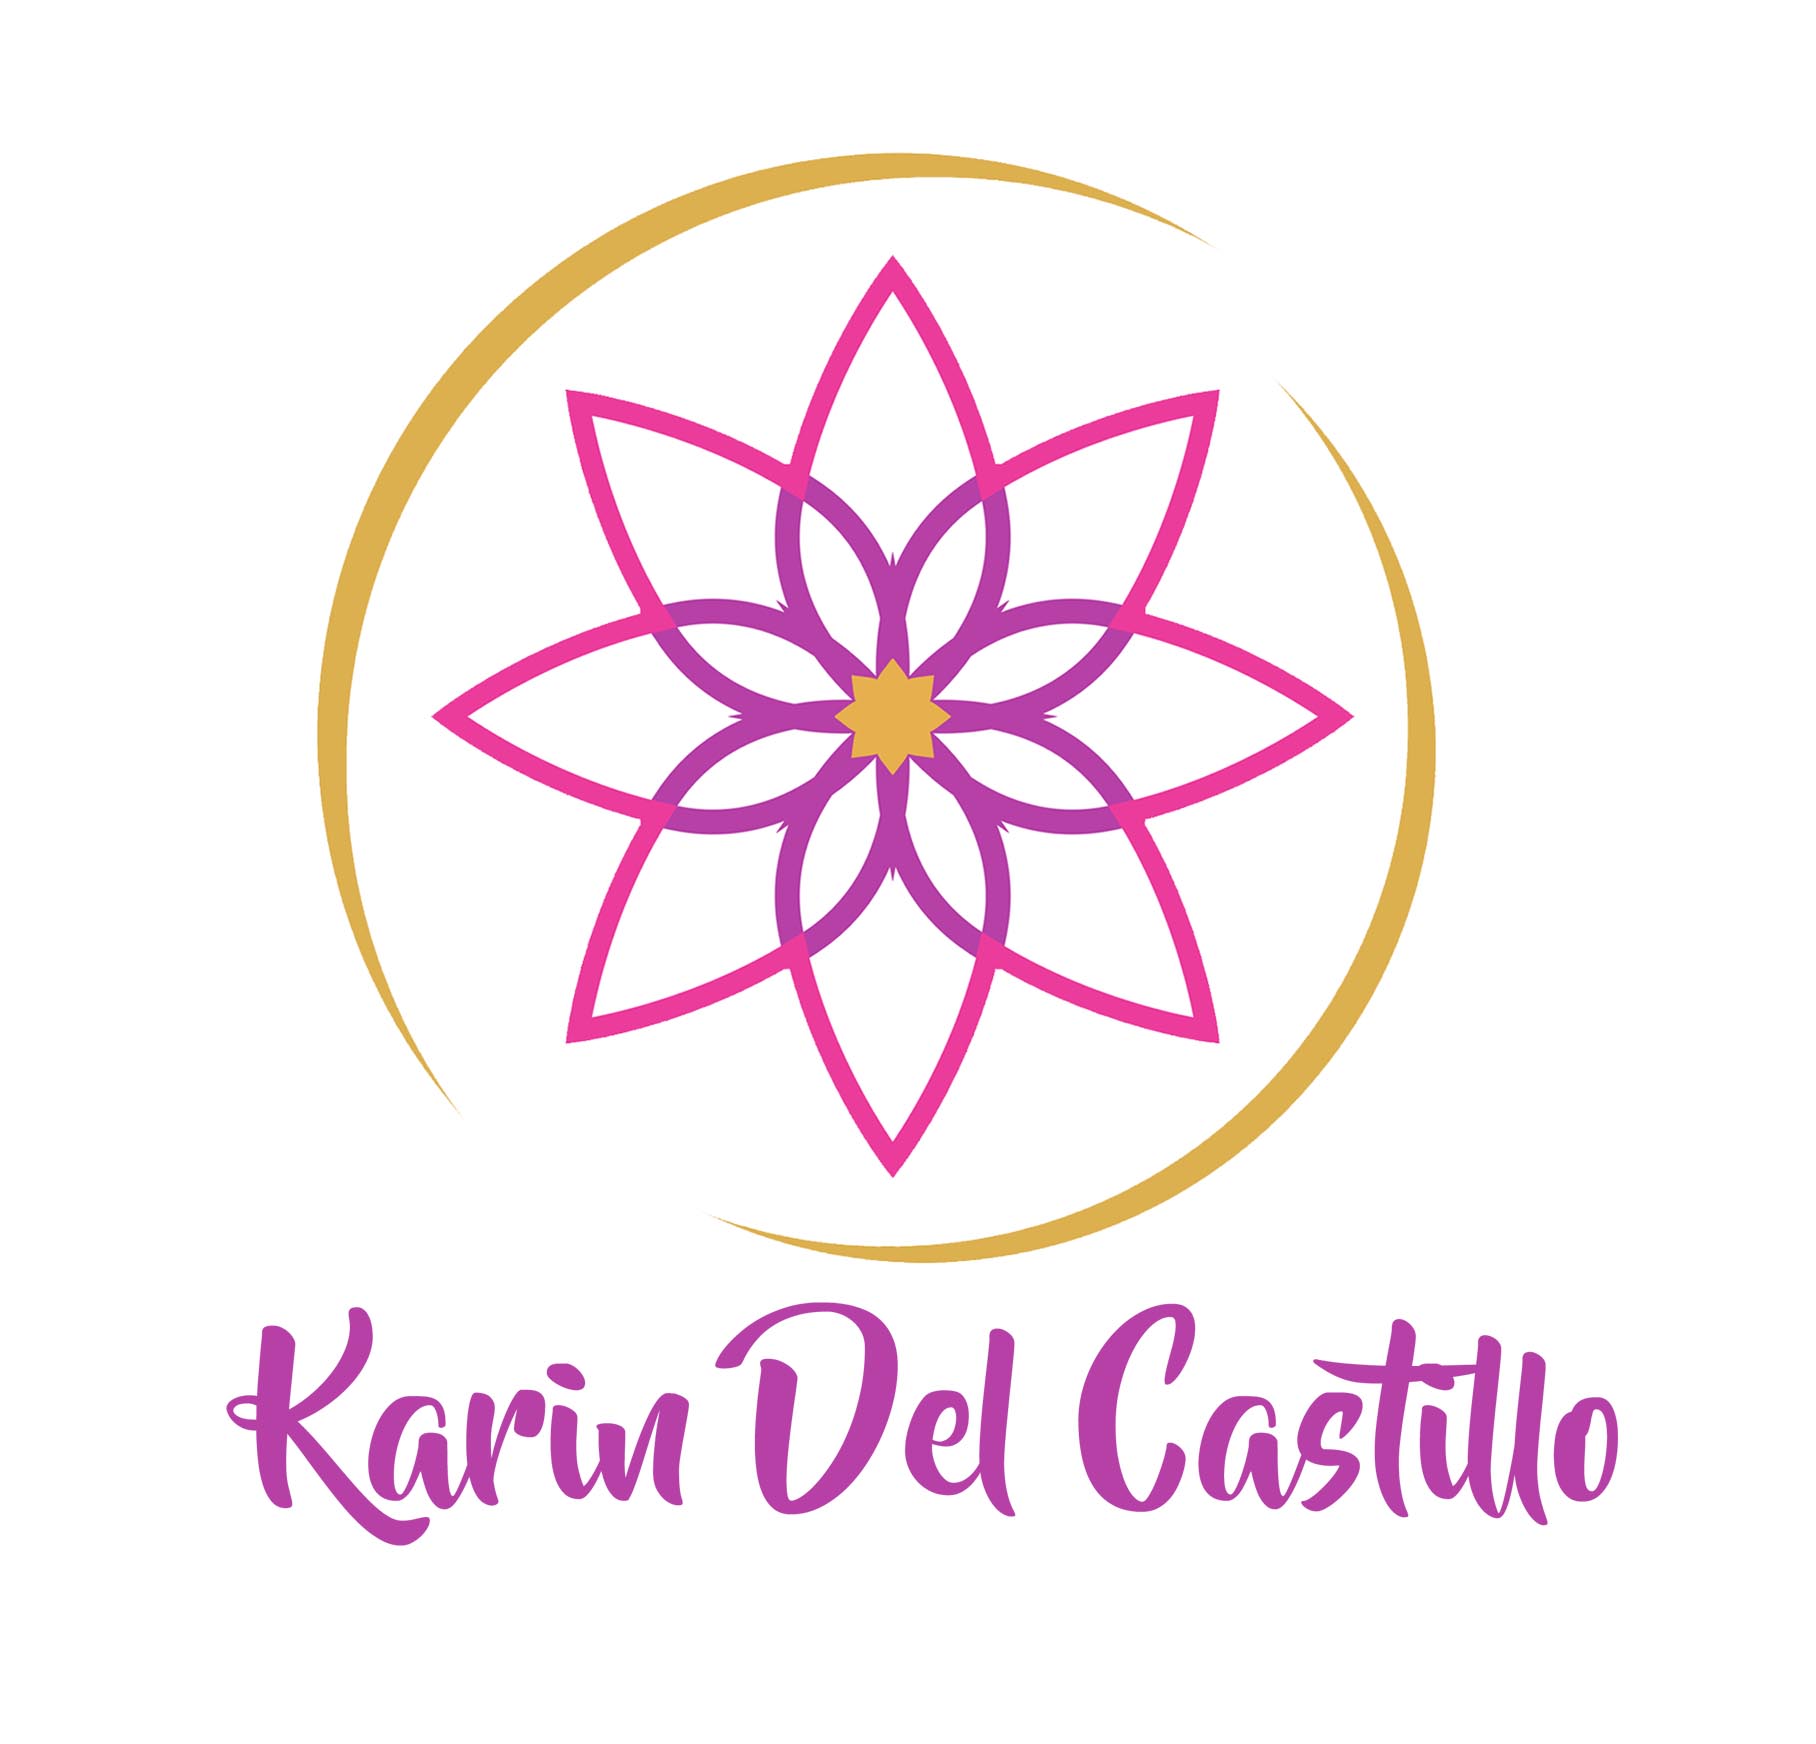 (c) Karindelcastillo.com